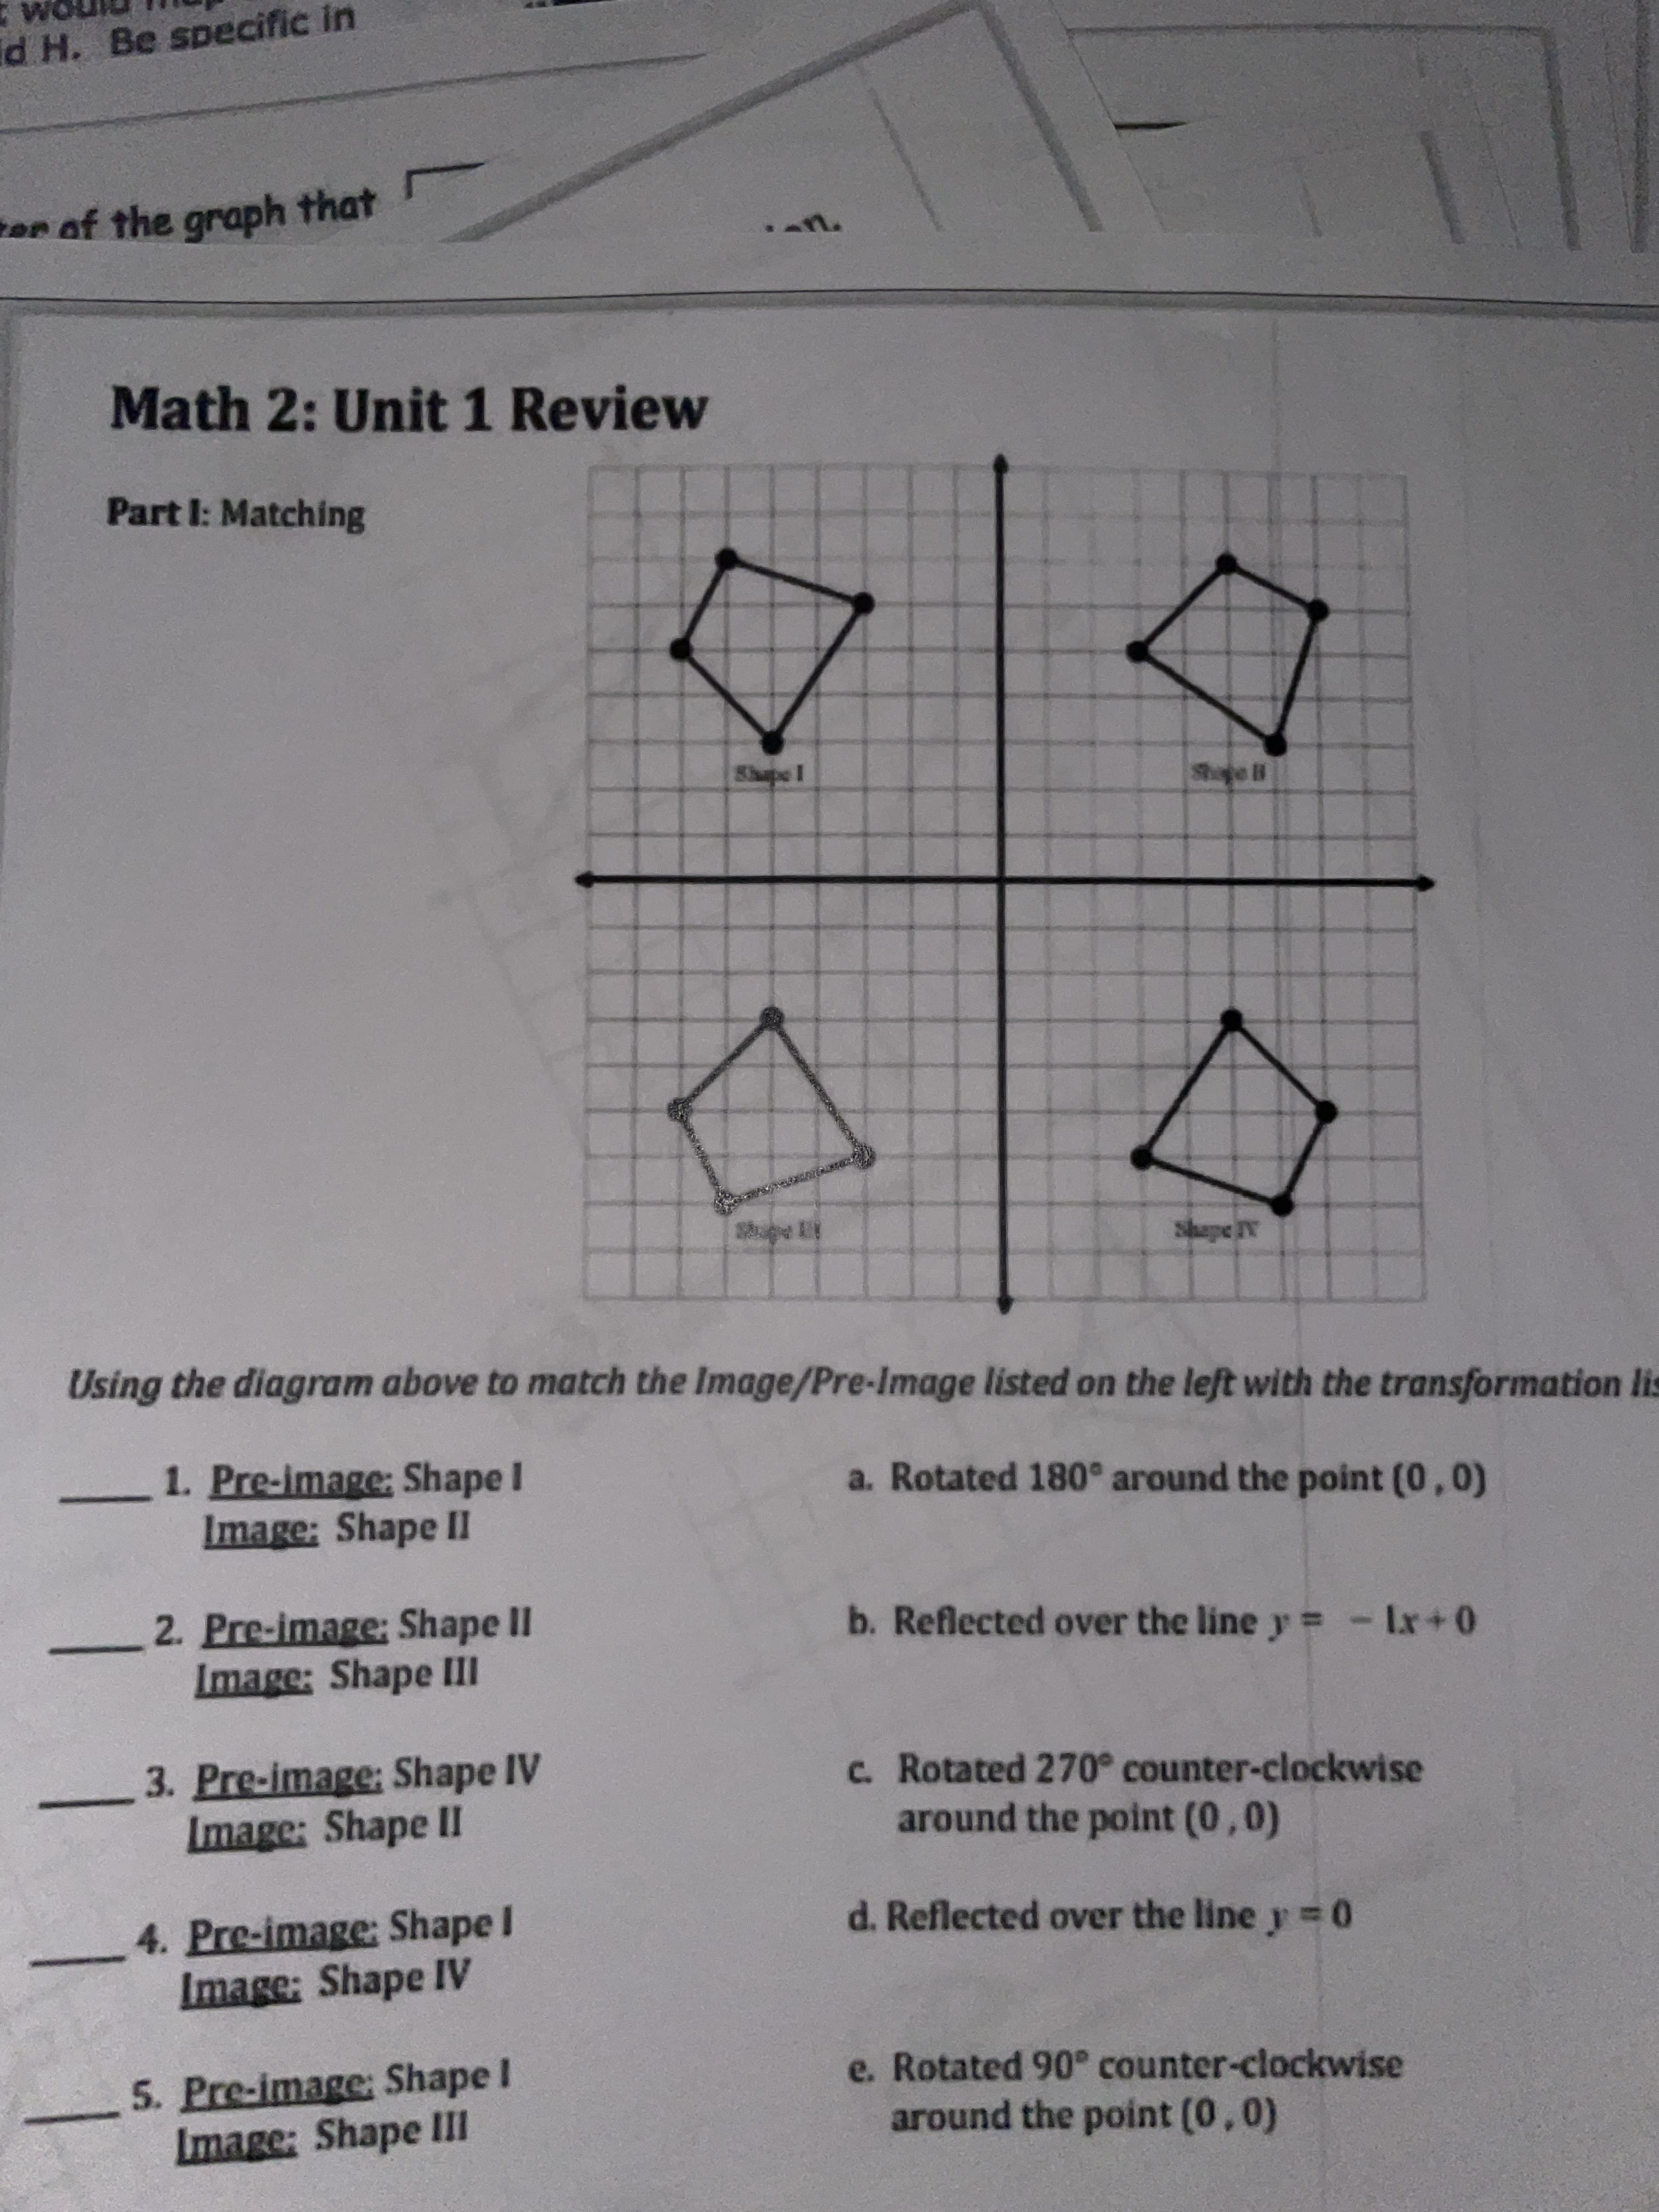 Math 2: Unit 1 Review
